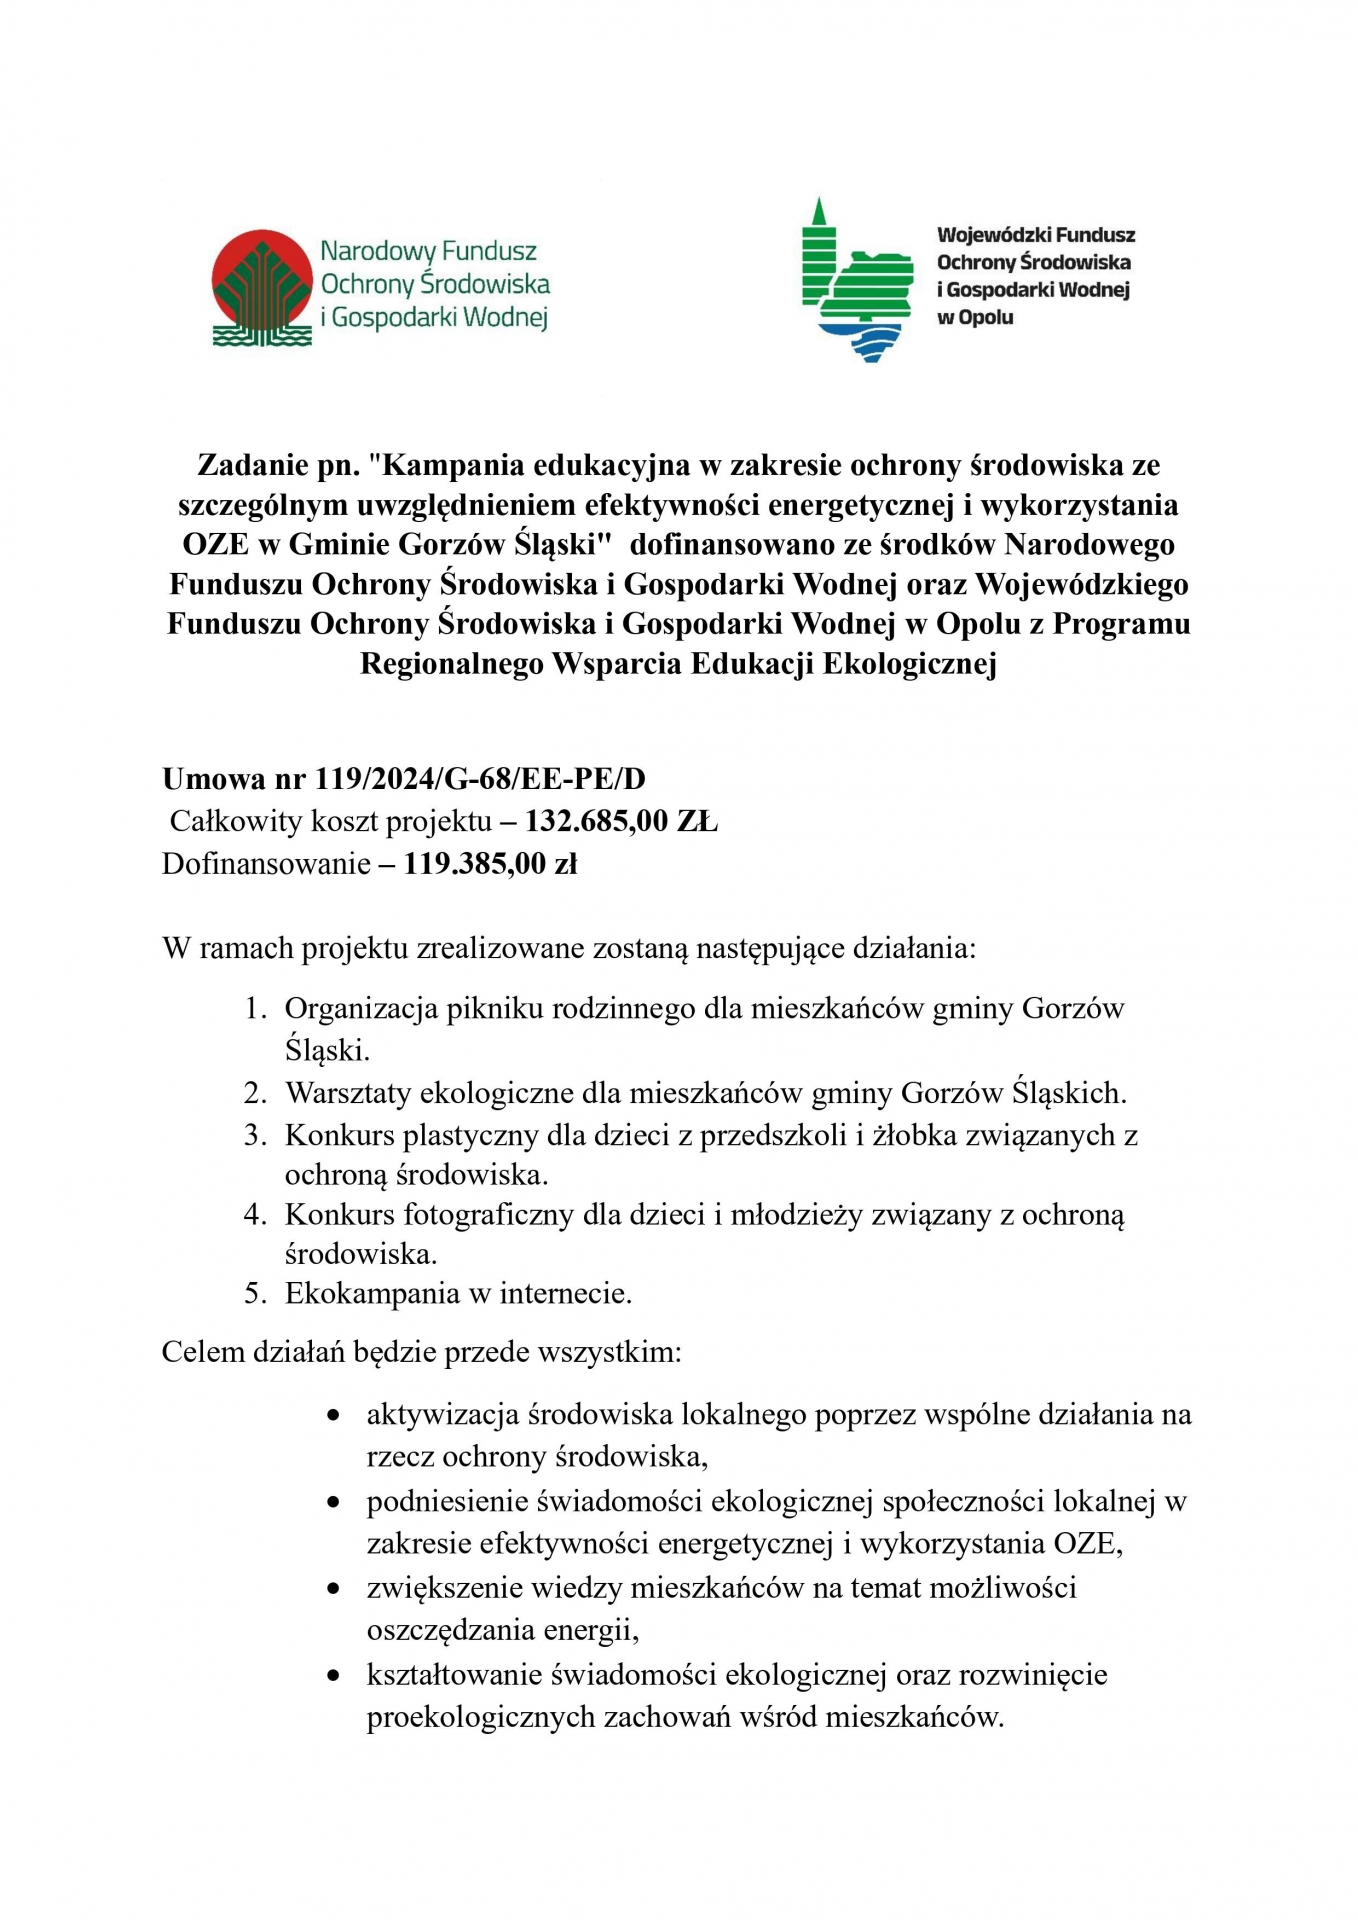 Zdjęcie do artykułu: "Kampania edukacyjna w zakresie ochrony środowiska ze szczególnym uwzględnieniem efektywności energetycznej i wykorzystania OZE w Gminie Gorzów Śląski" 